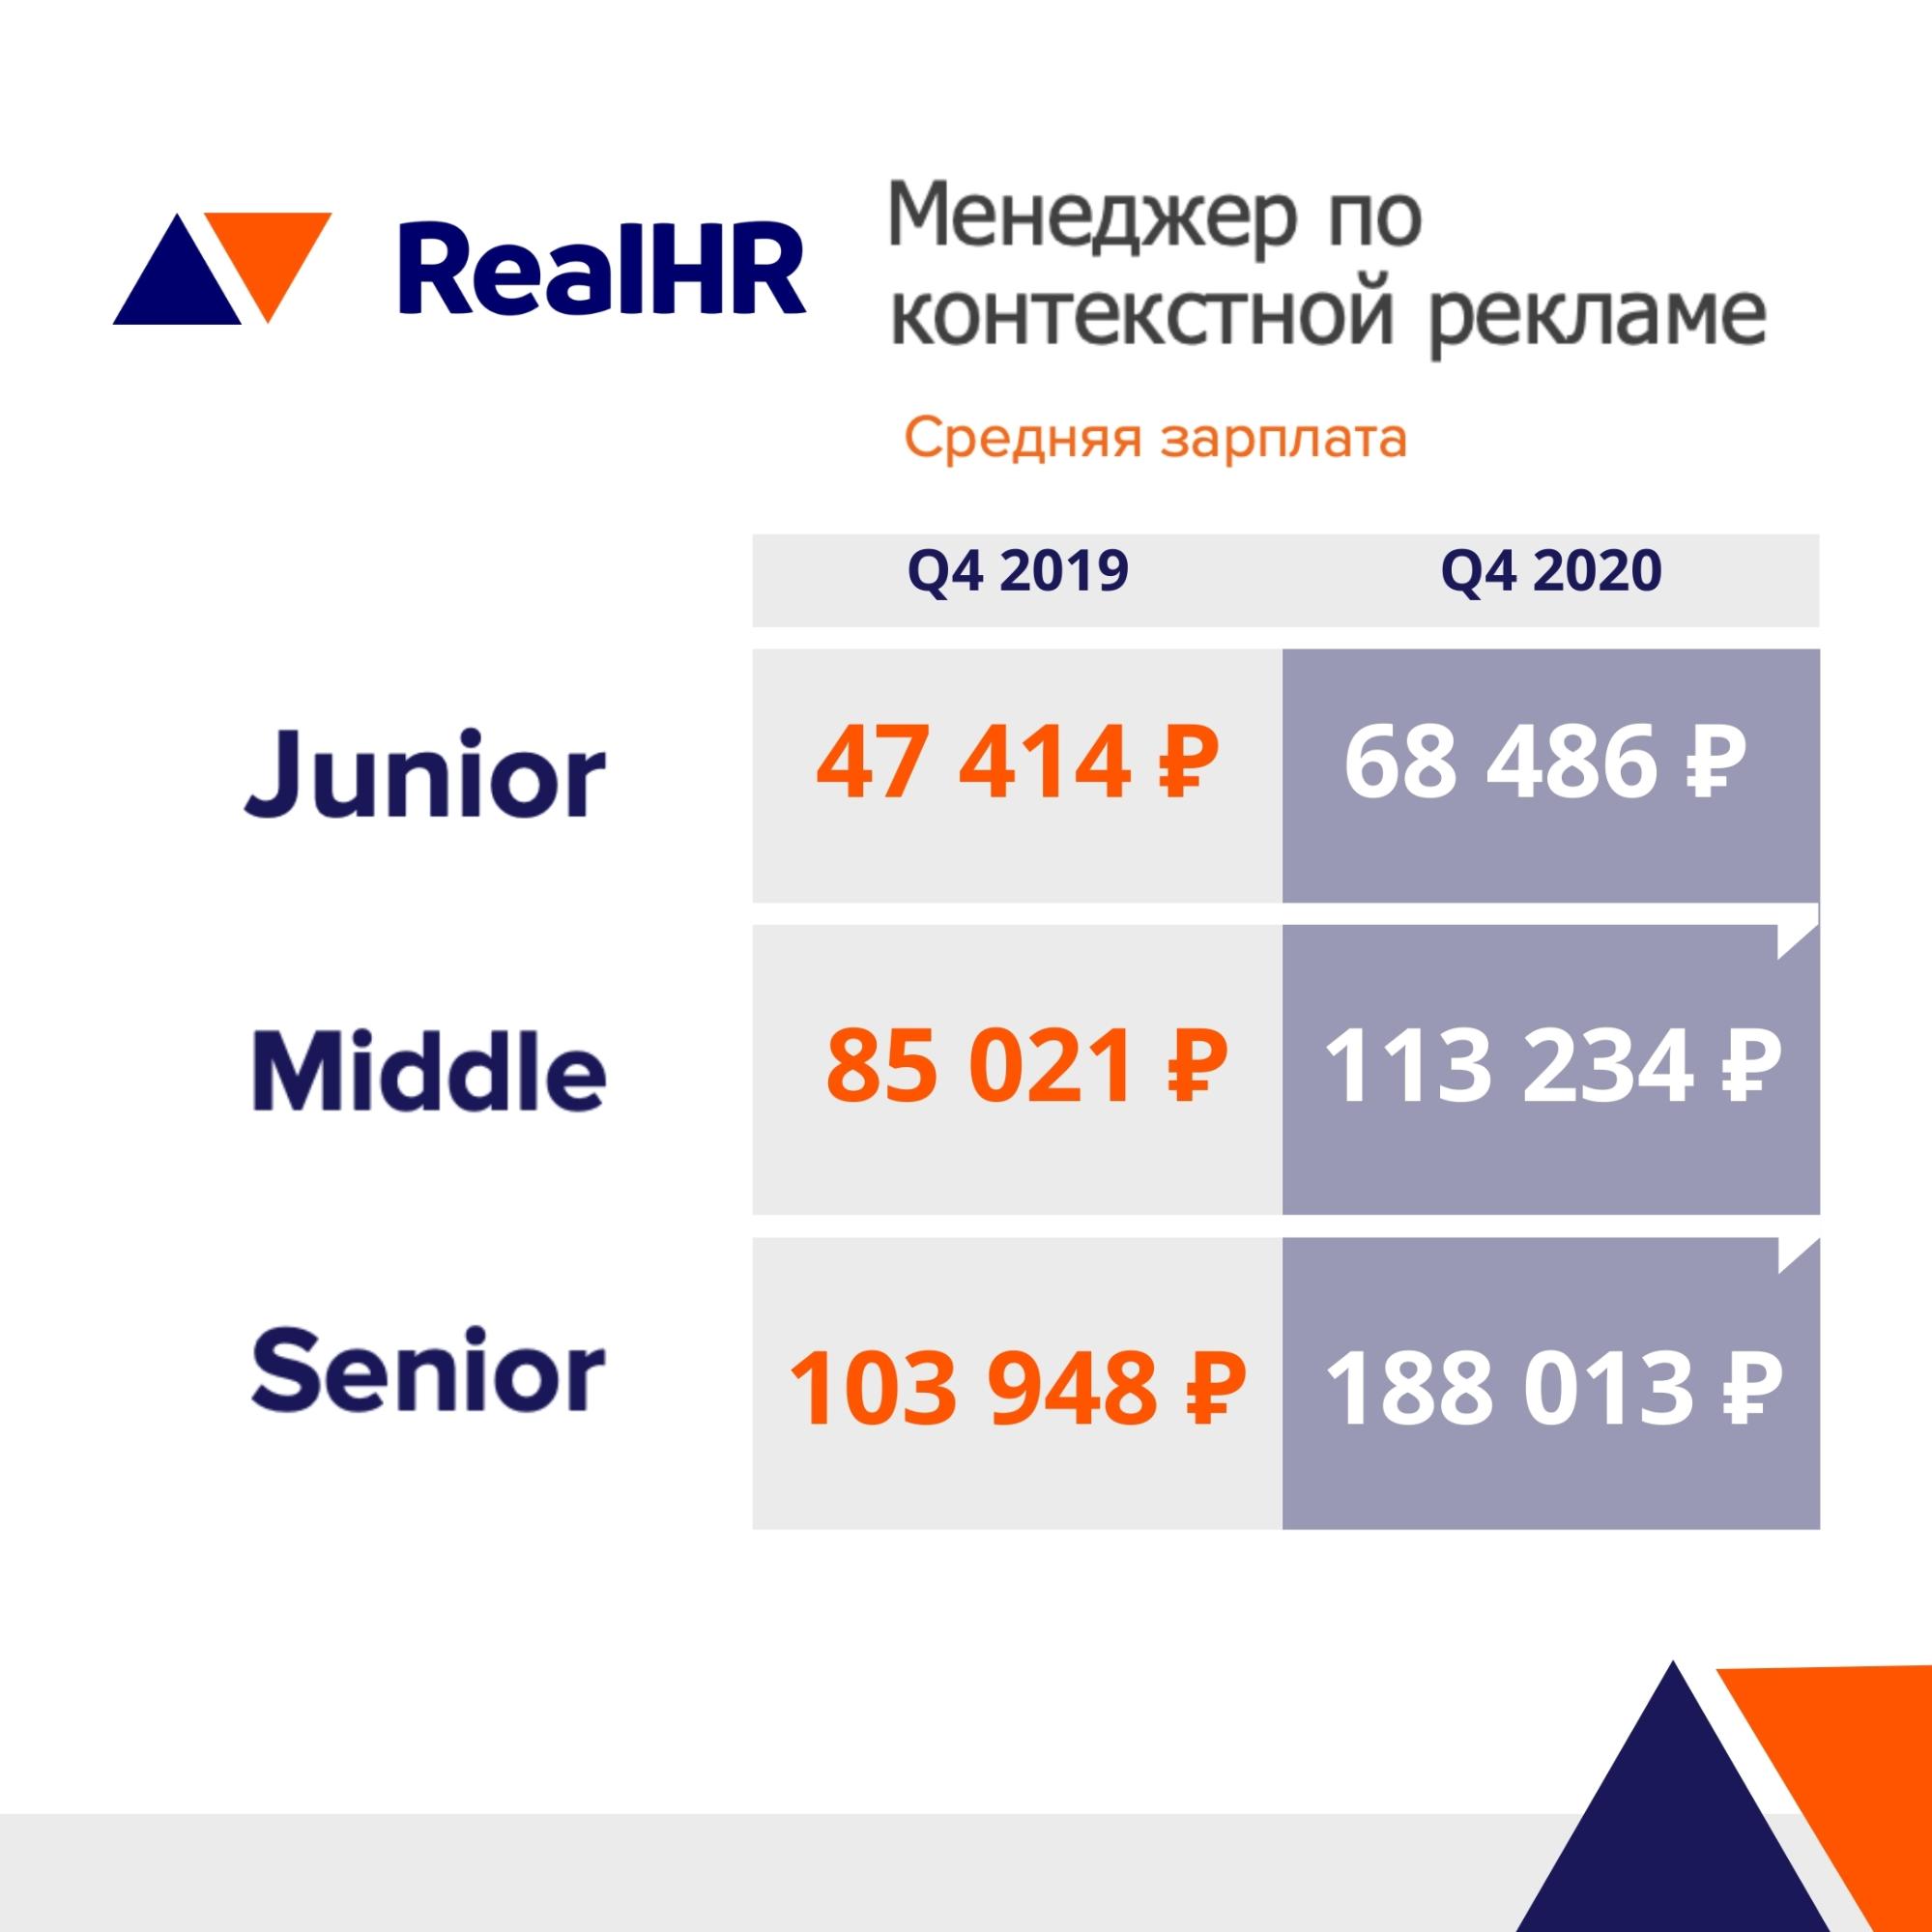 Рейтинг зарплат Q4 2020 от RealHR: Менеджеры по контекстной рекламе